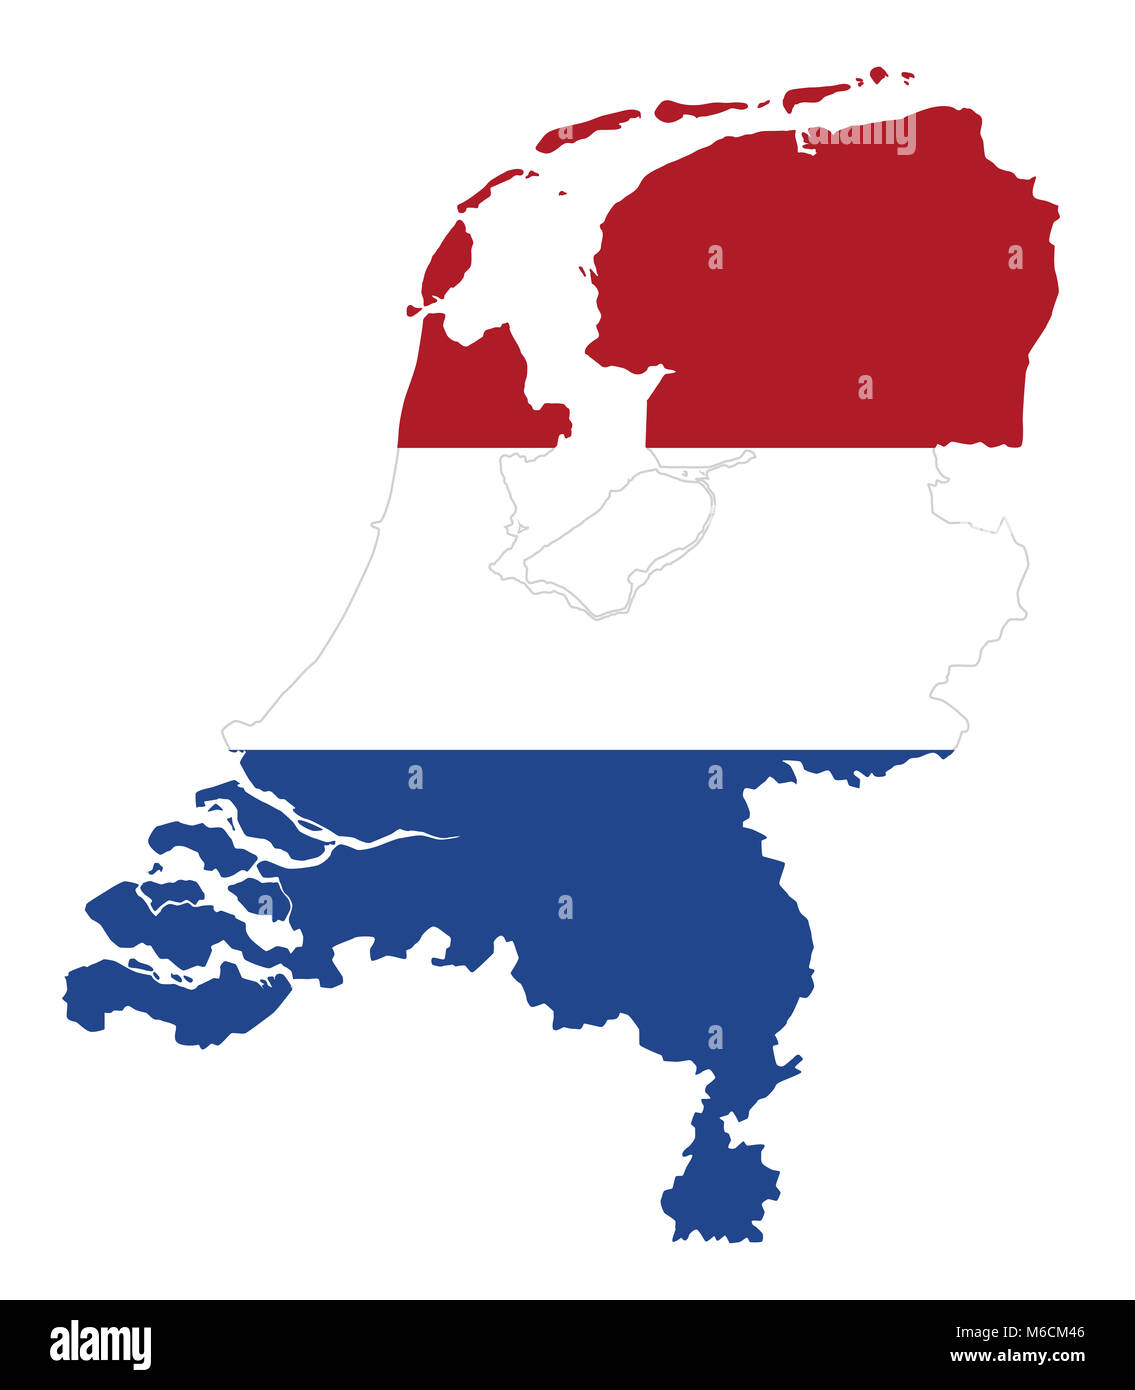 Dans l'esquisse du pavillon des Pays-Bas. D'un drapeau en rouge, blanc et bleu. Bannière tricolore horizontal avec la forme du pays. Isolées. Banque D'Images